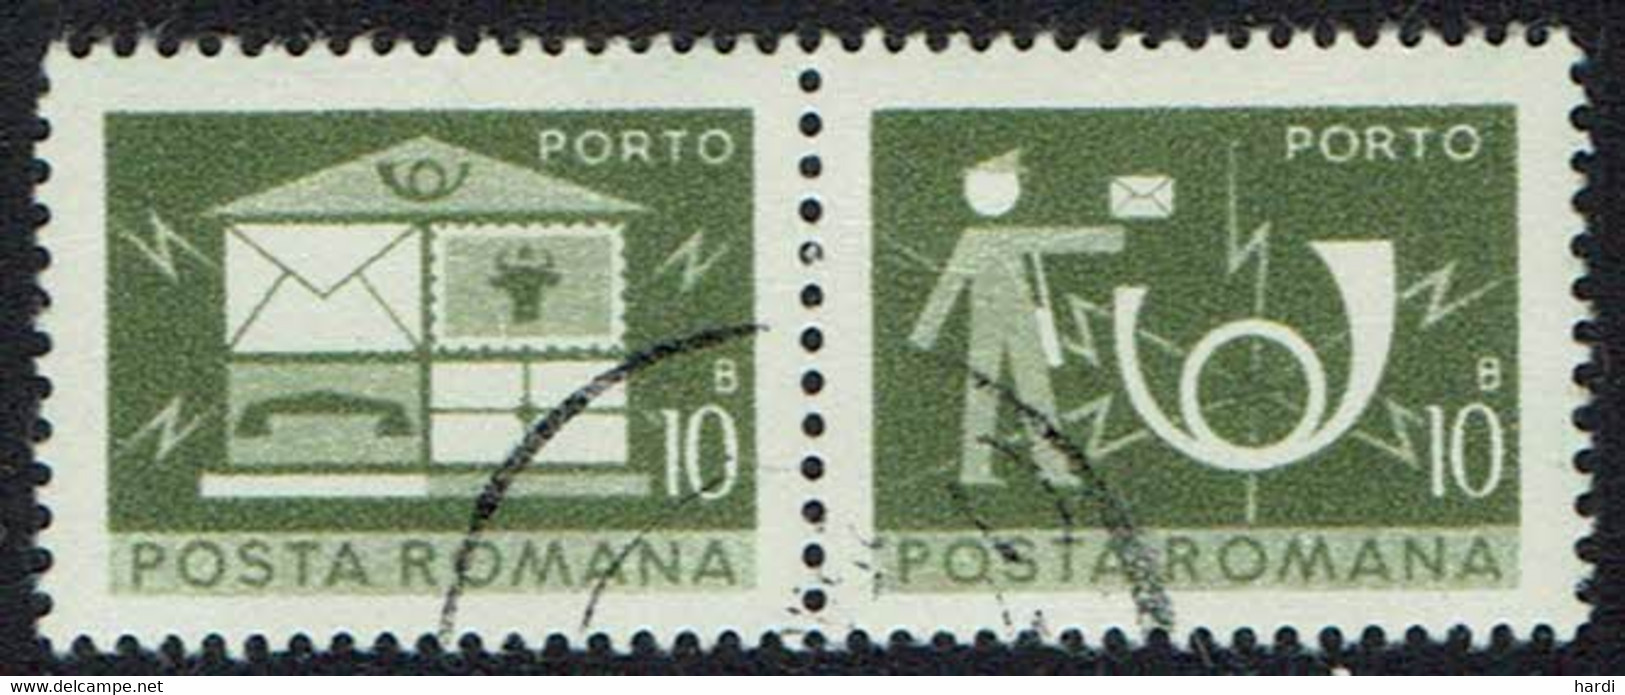 Rumänien Portomarken 1974, Mi.Nr 120, Gestempelt - Postage Due